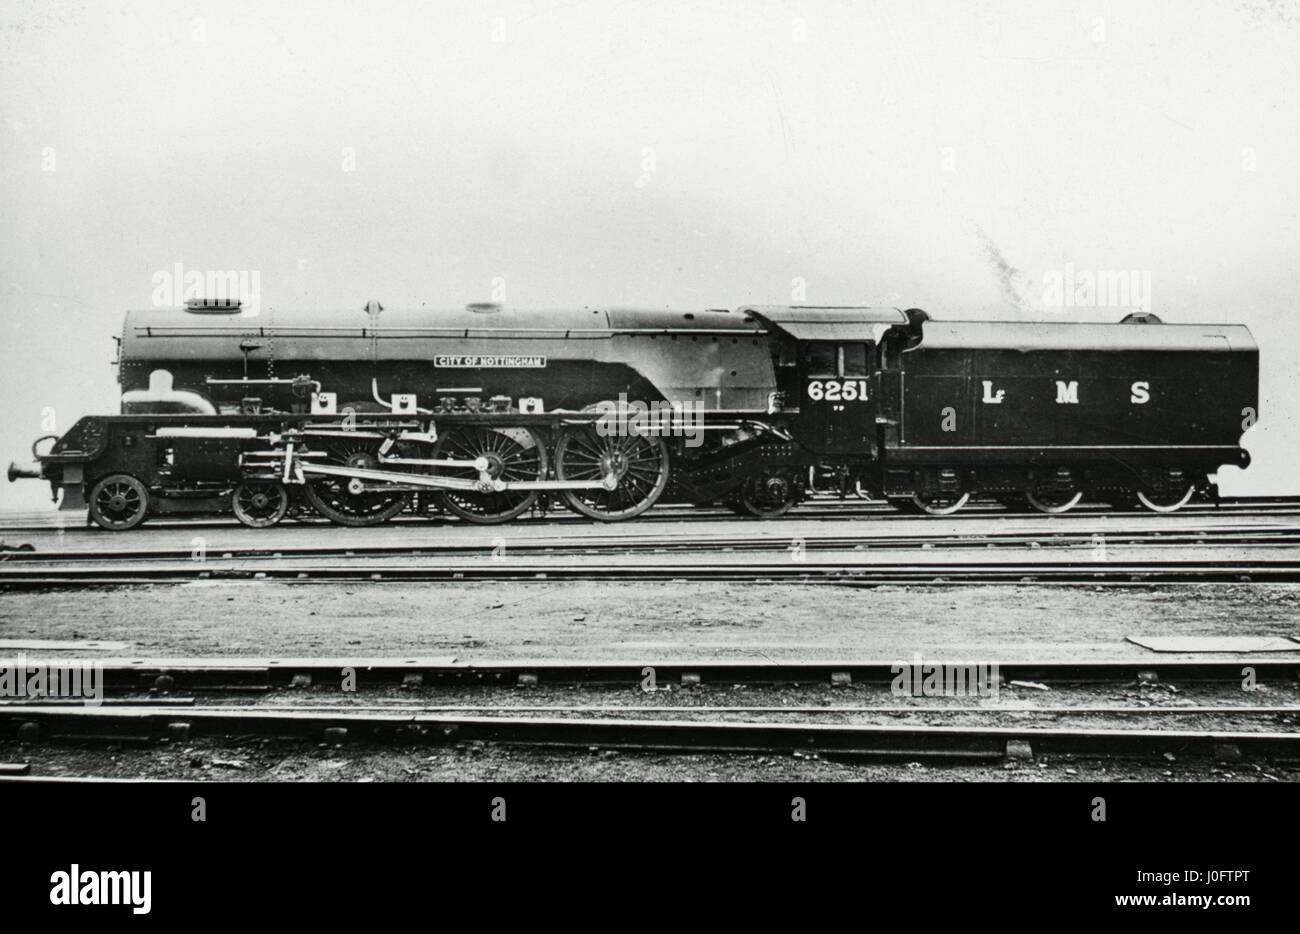 London, Midland and Scottish Railway LMS locomotive 6251 'City of Nottingham' Stock Photo